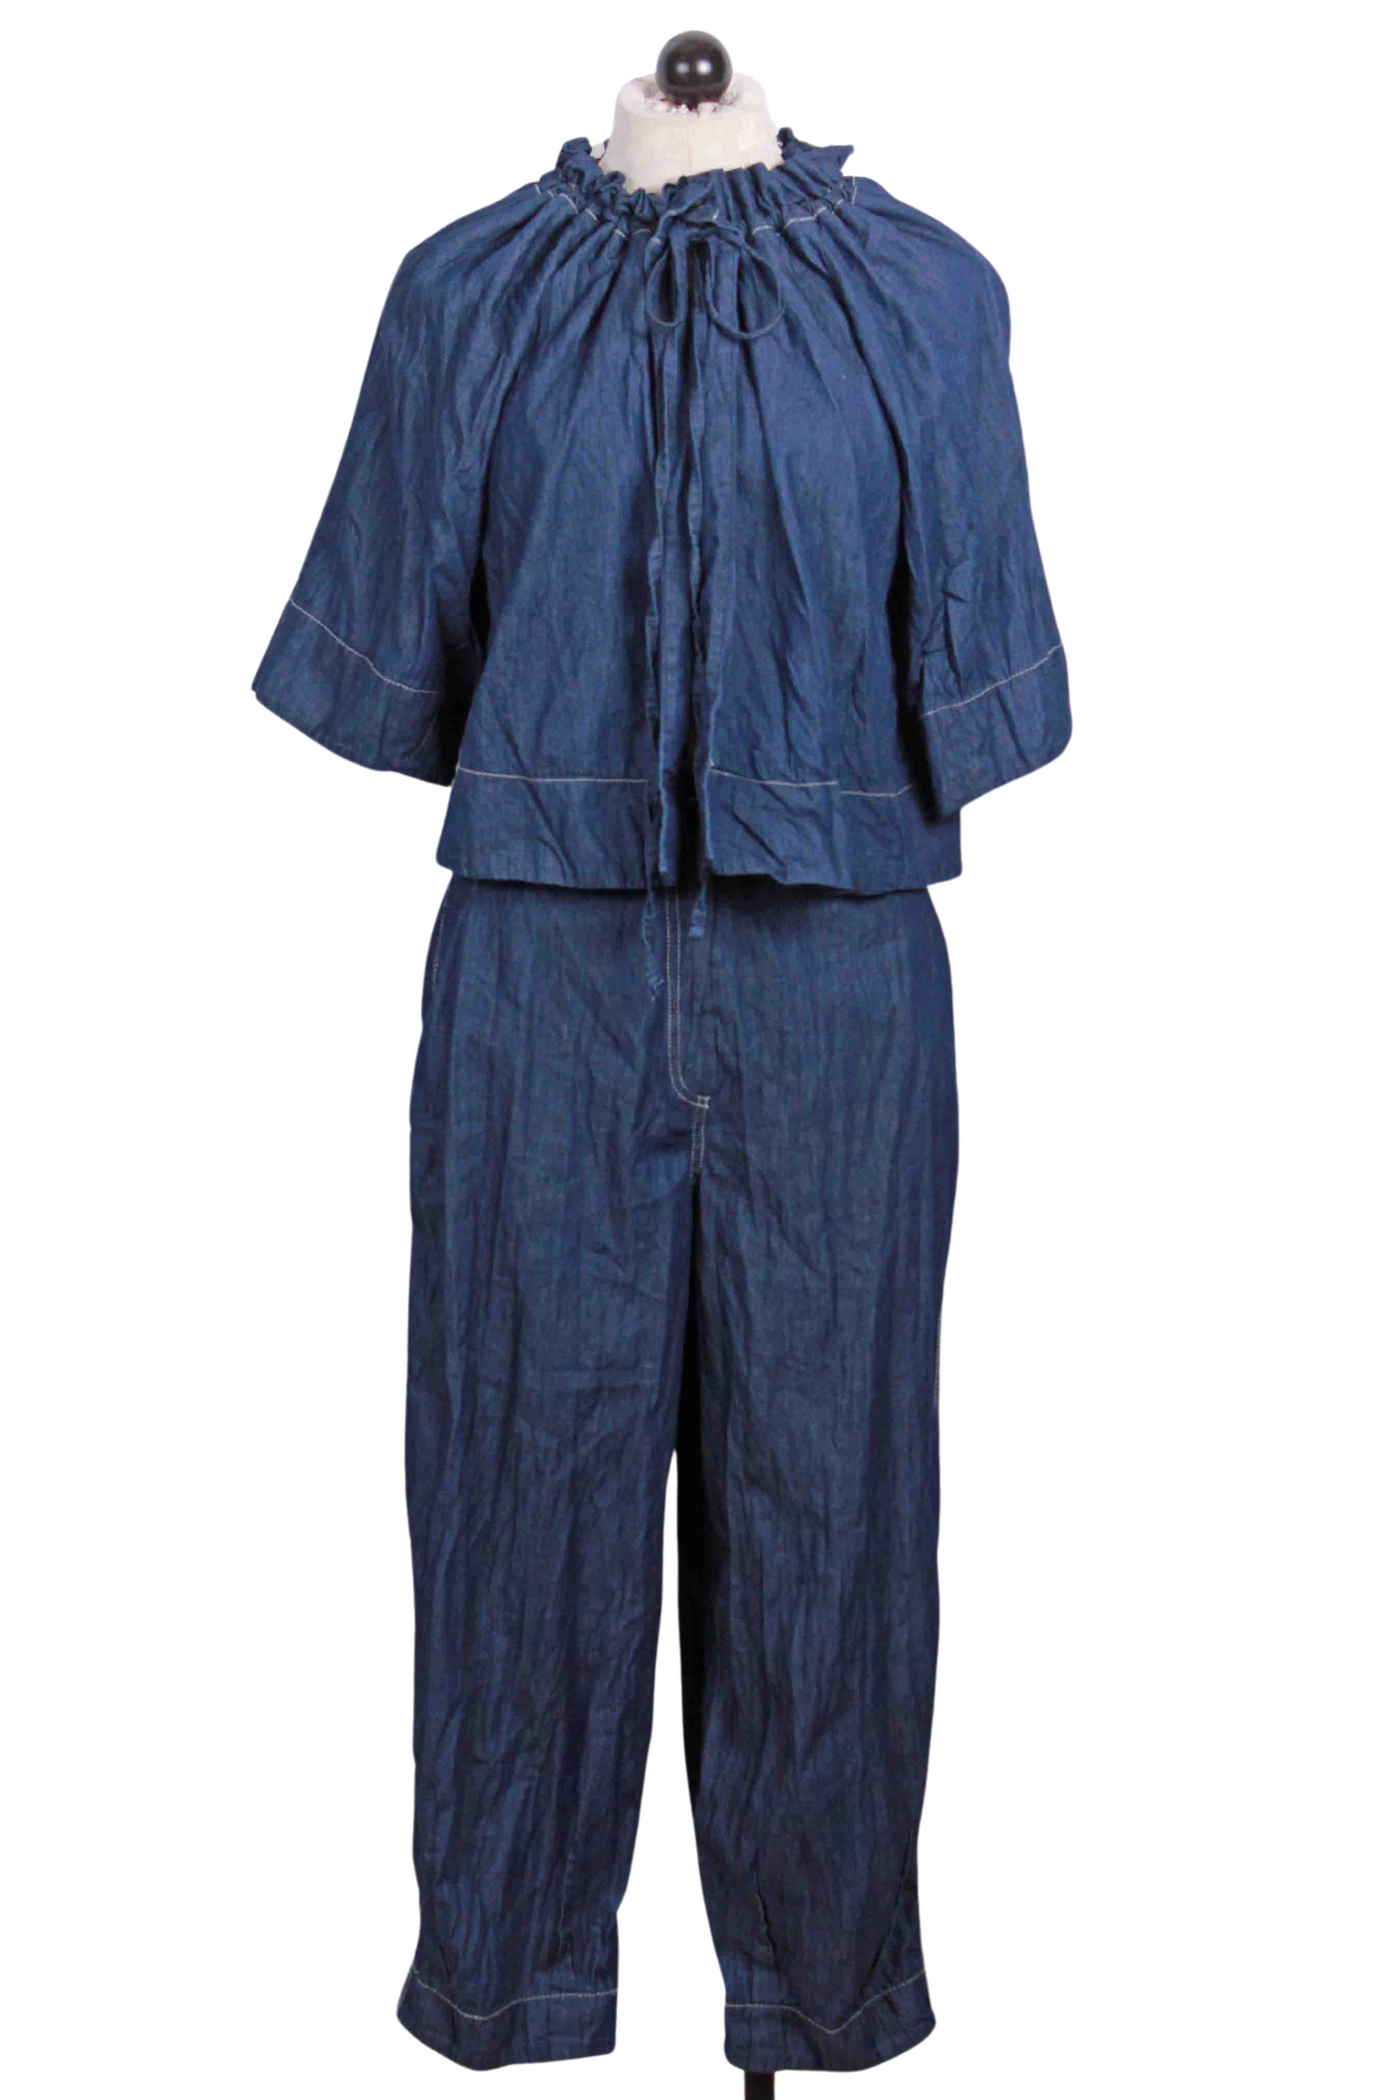 Crinkle Cropped Denim Pant by Ozai N Ku with matching drawstring neck jacket by Ozai n Ku